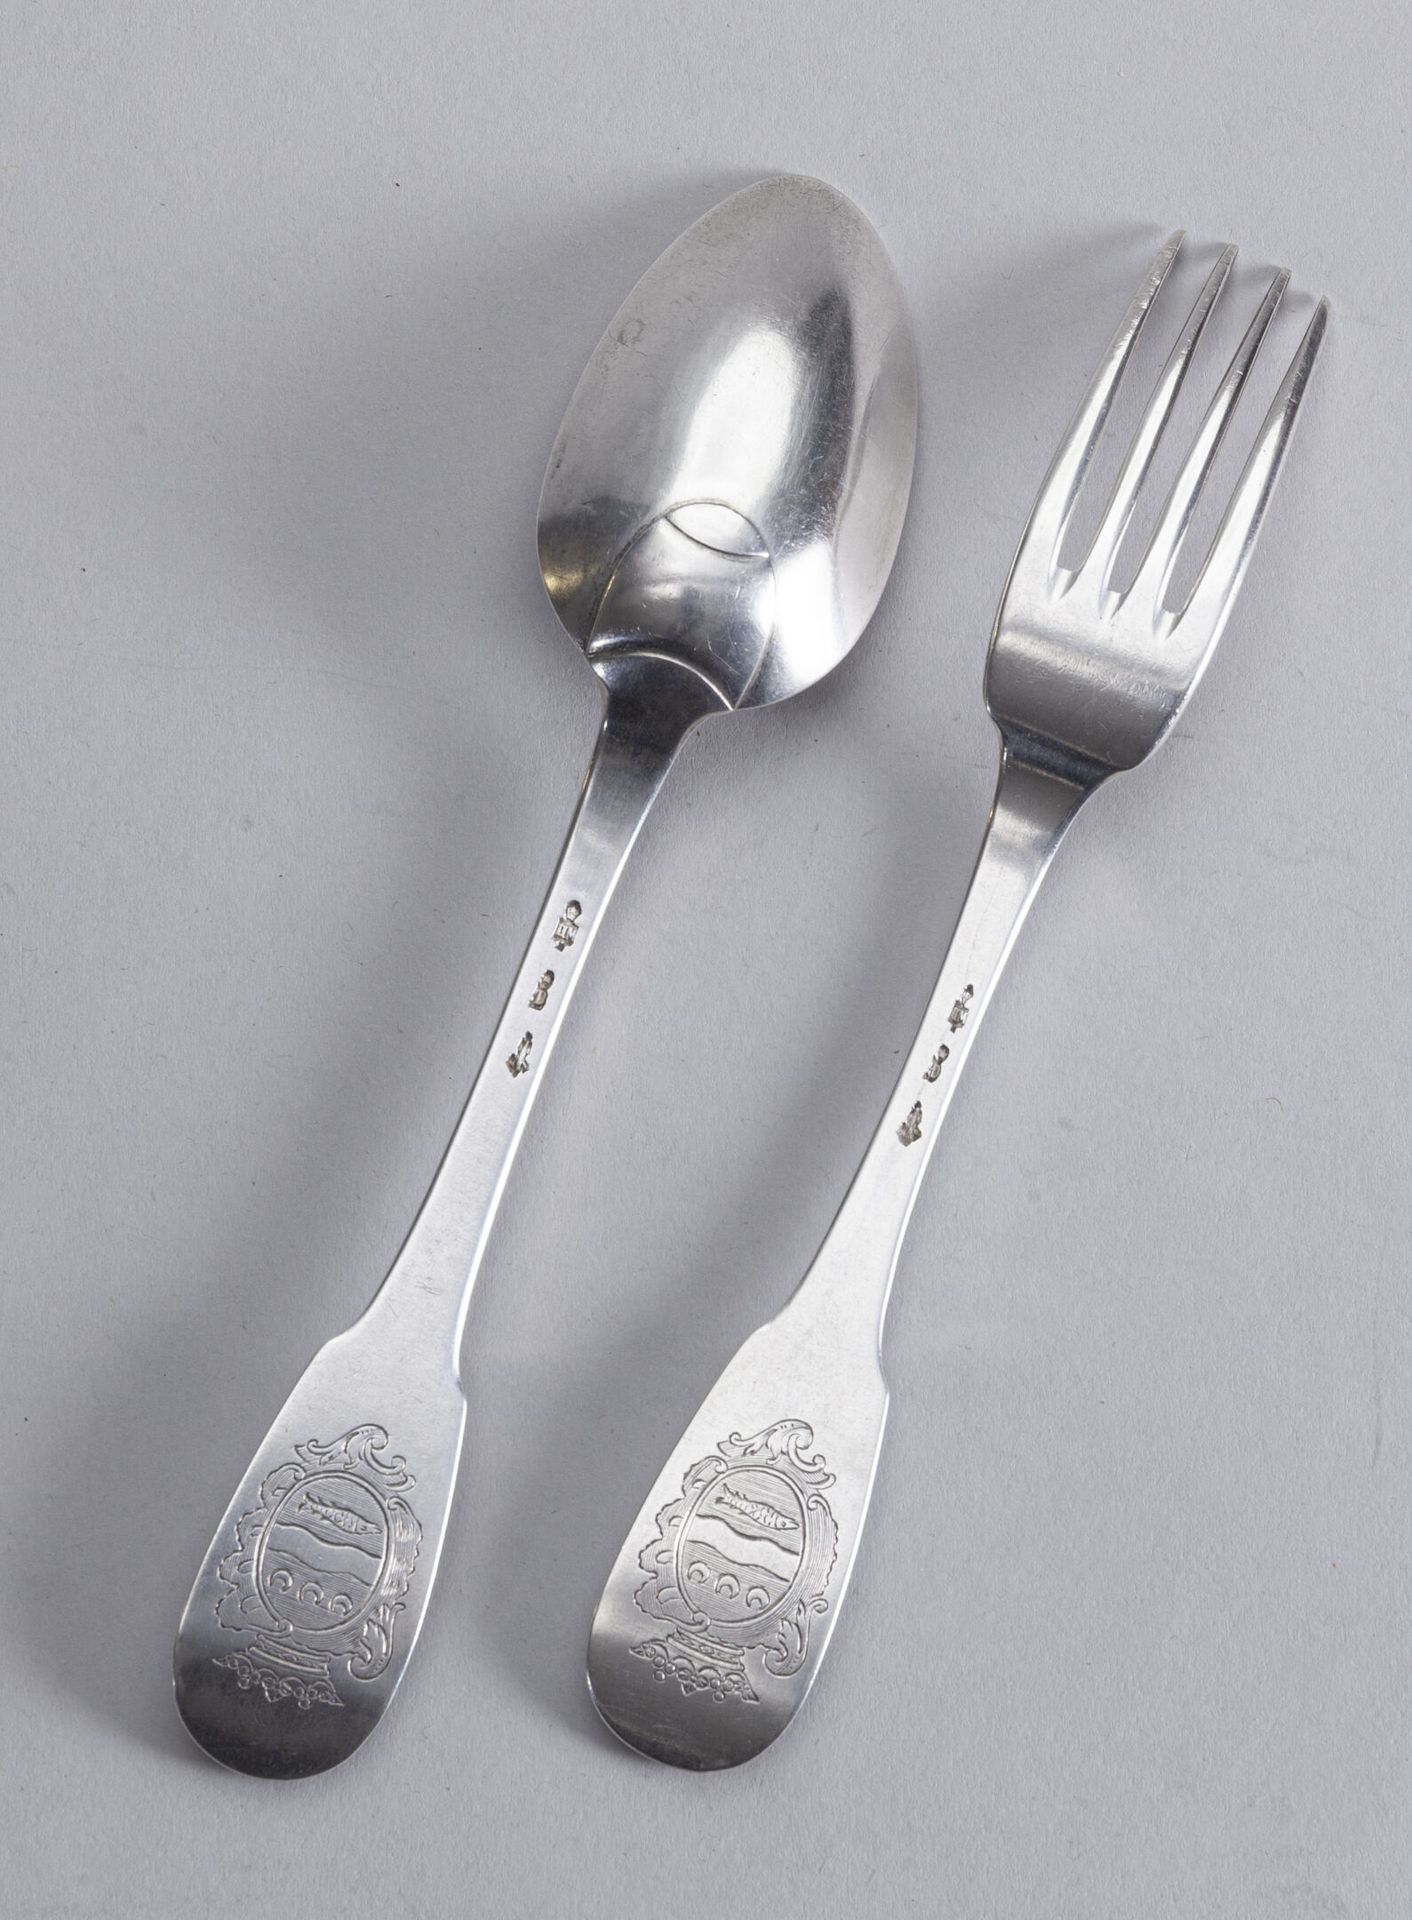 Null 银质餐具，单层模型，带纹章

康布雷，1740至750年间

大师级工匠：HM

重量：165克 BL